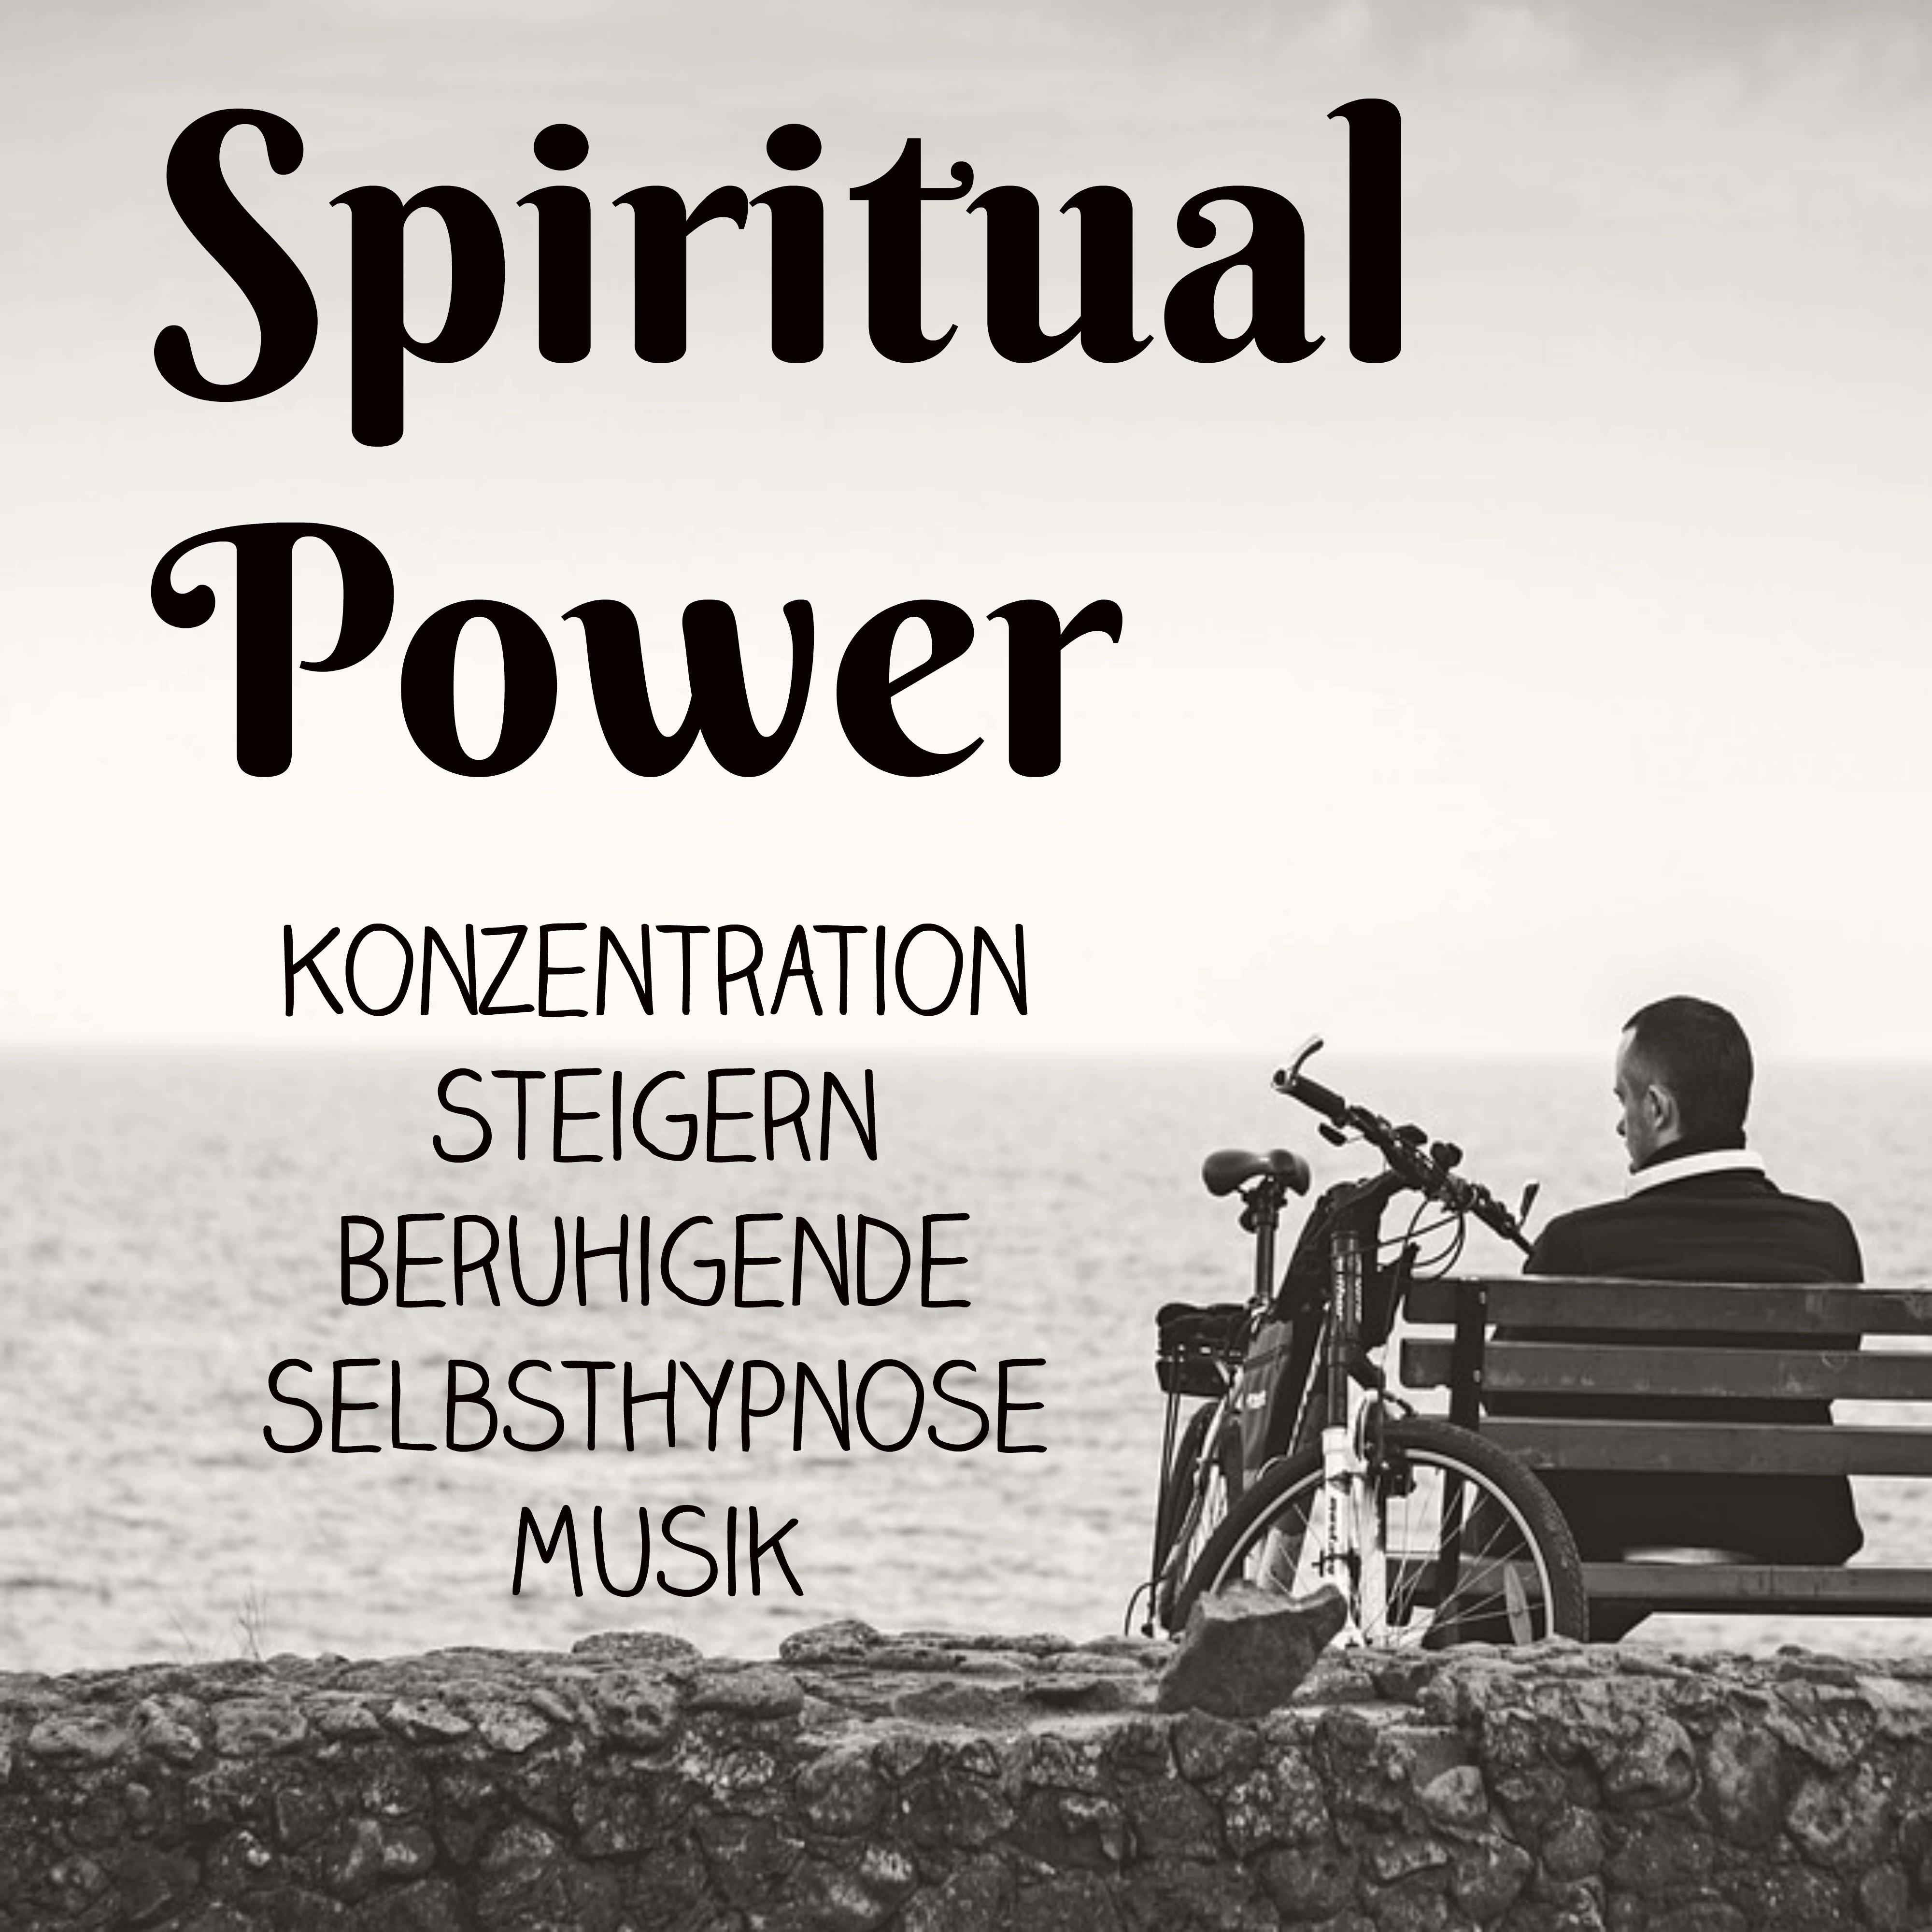 Spiritual Power - Konzentration Steigern Beruhigende Selbsthypnose Musik für Spirituelle Heilung Achtsamkeitsmeditation und Schlafzyklus